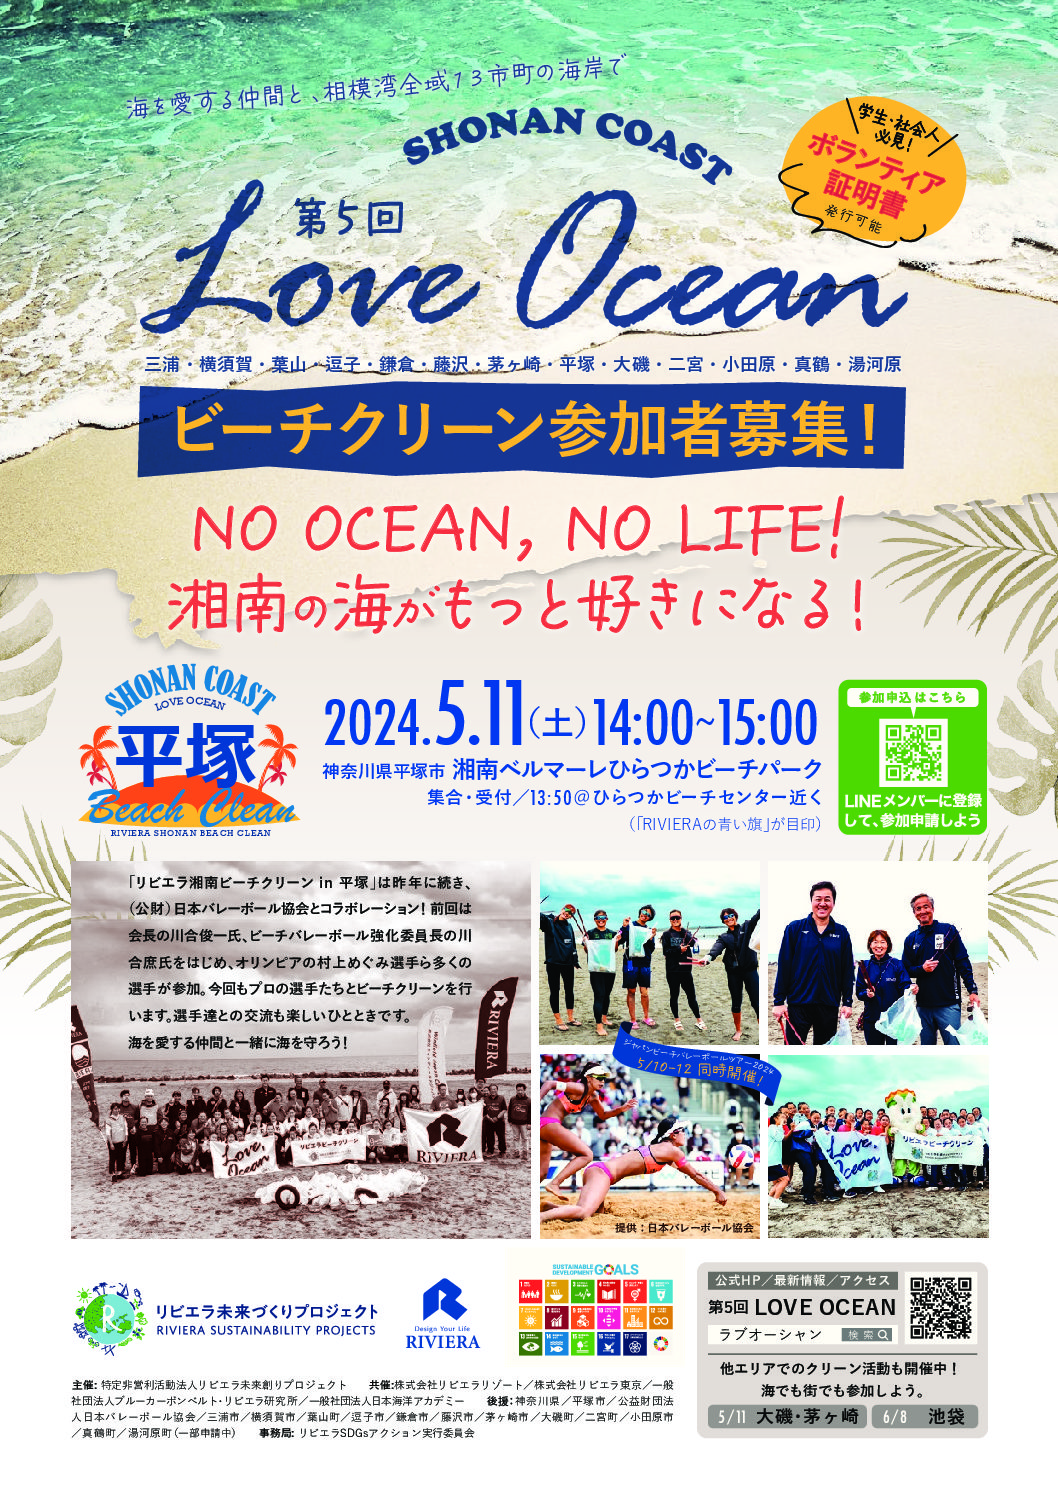 【平塚市】5/11(土) ビーチクリーン、川合氏・ビーチバレー選手と参加しよう！【LOVE OCEAN】はビーチバレー大会と同時開催！